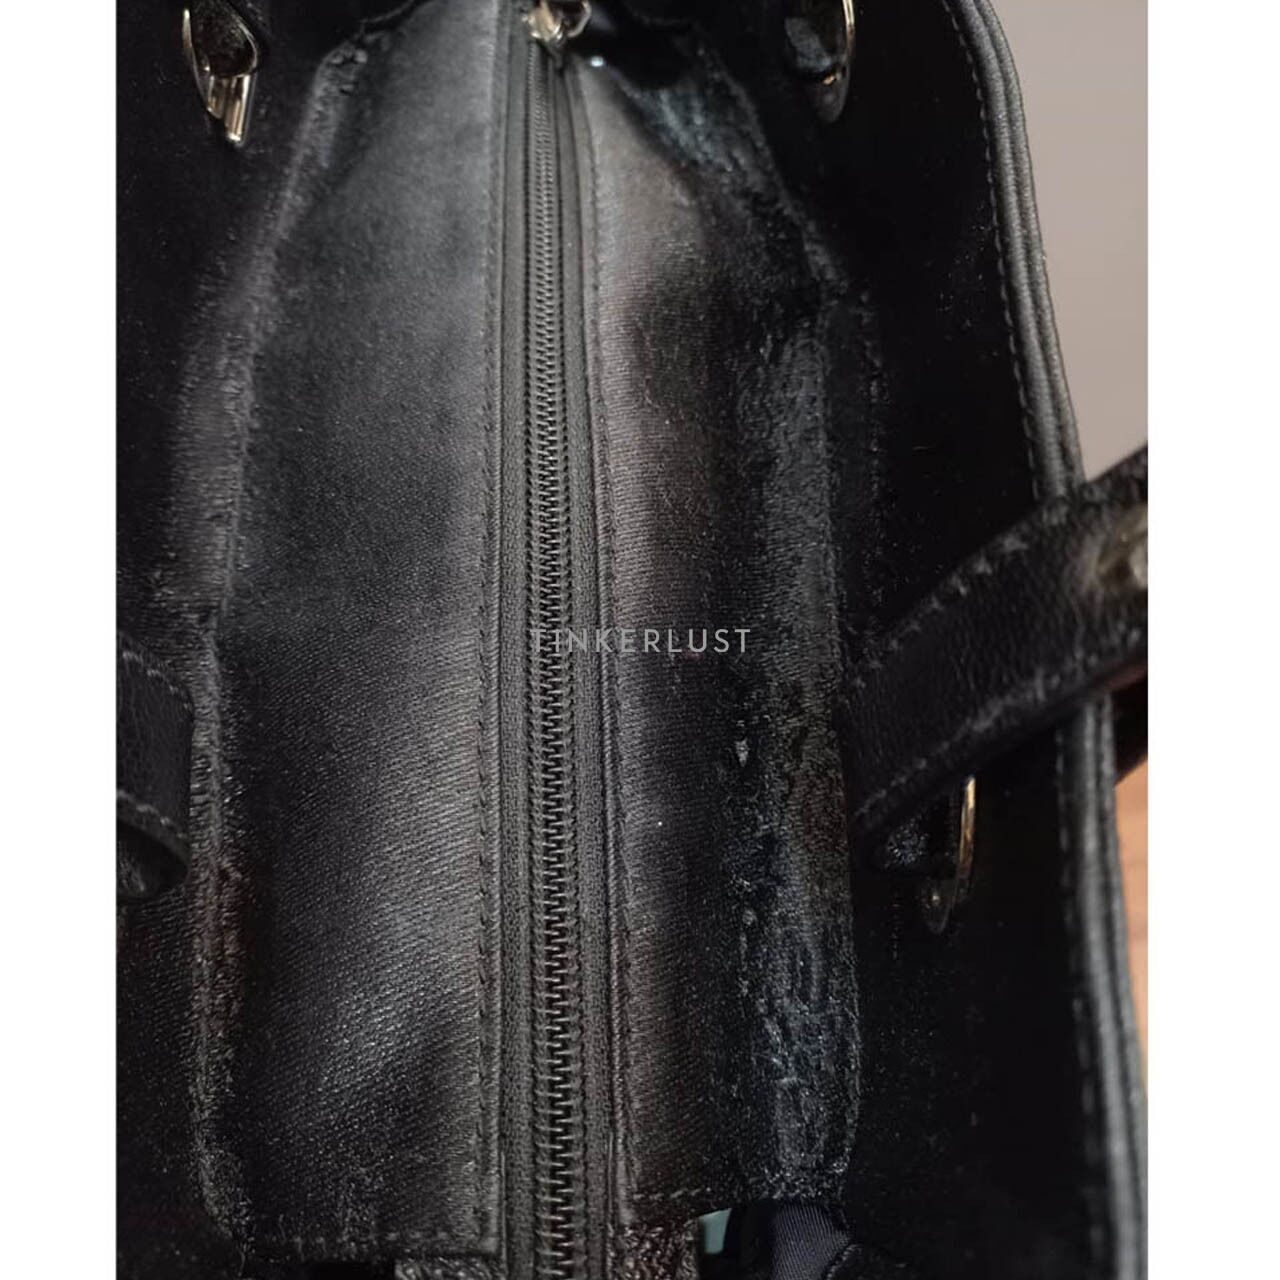 Chanel Biaritz PM Black Metalic SHW #11 2010 Tote Bag